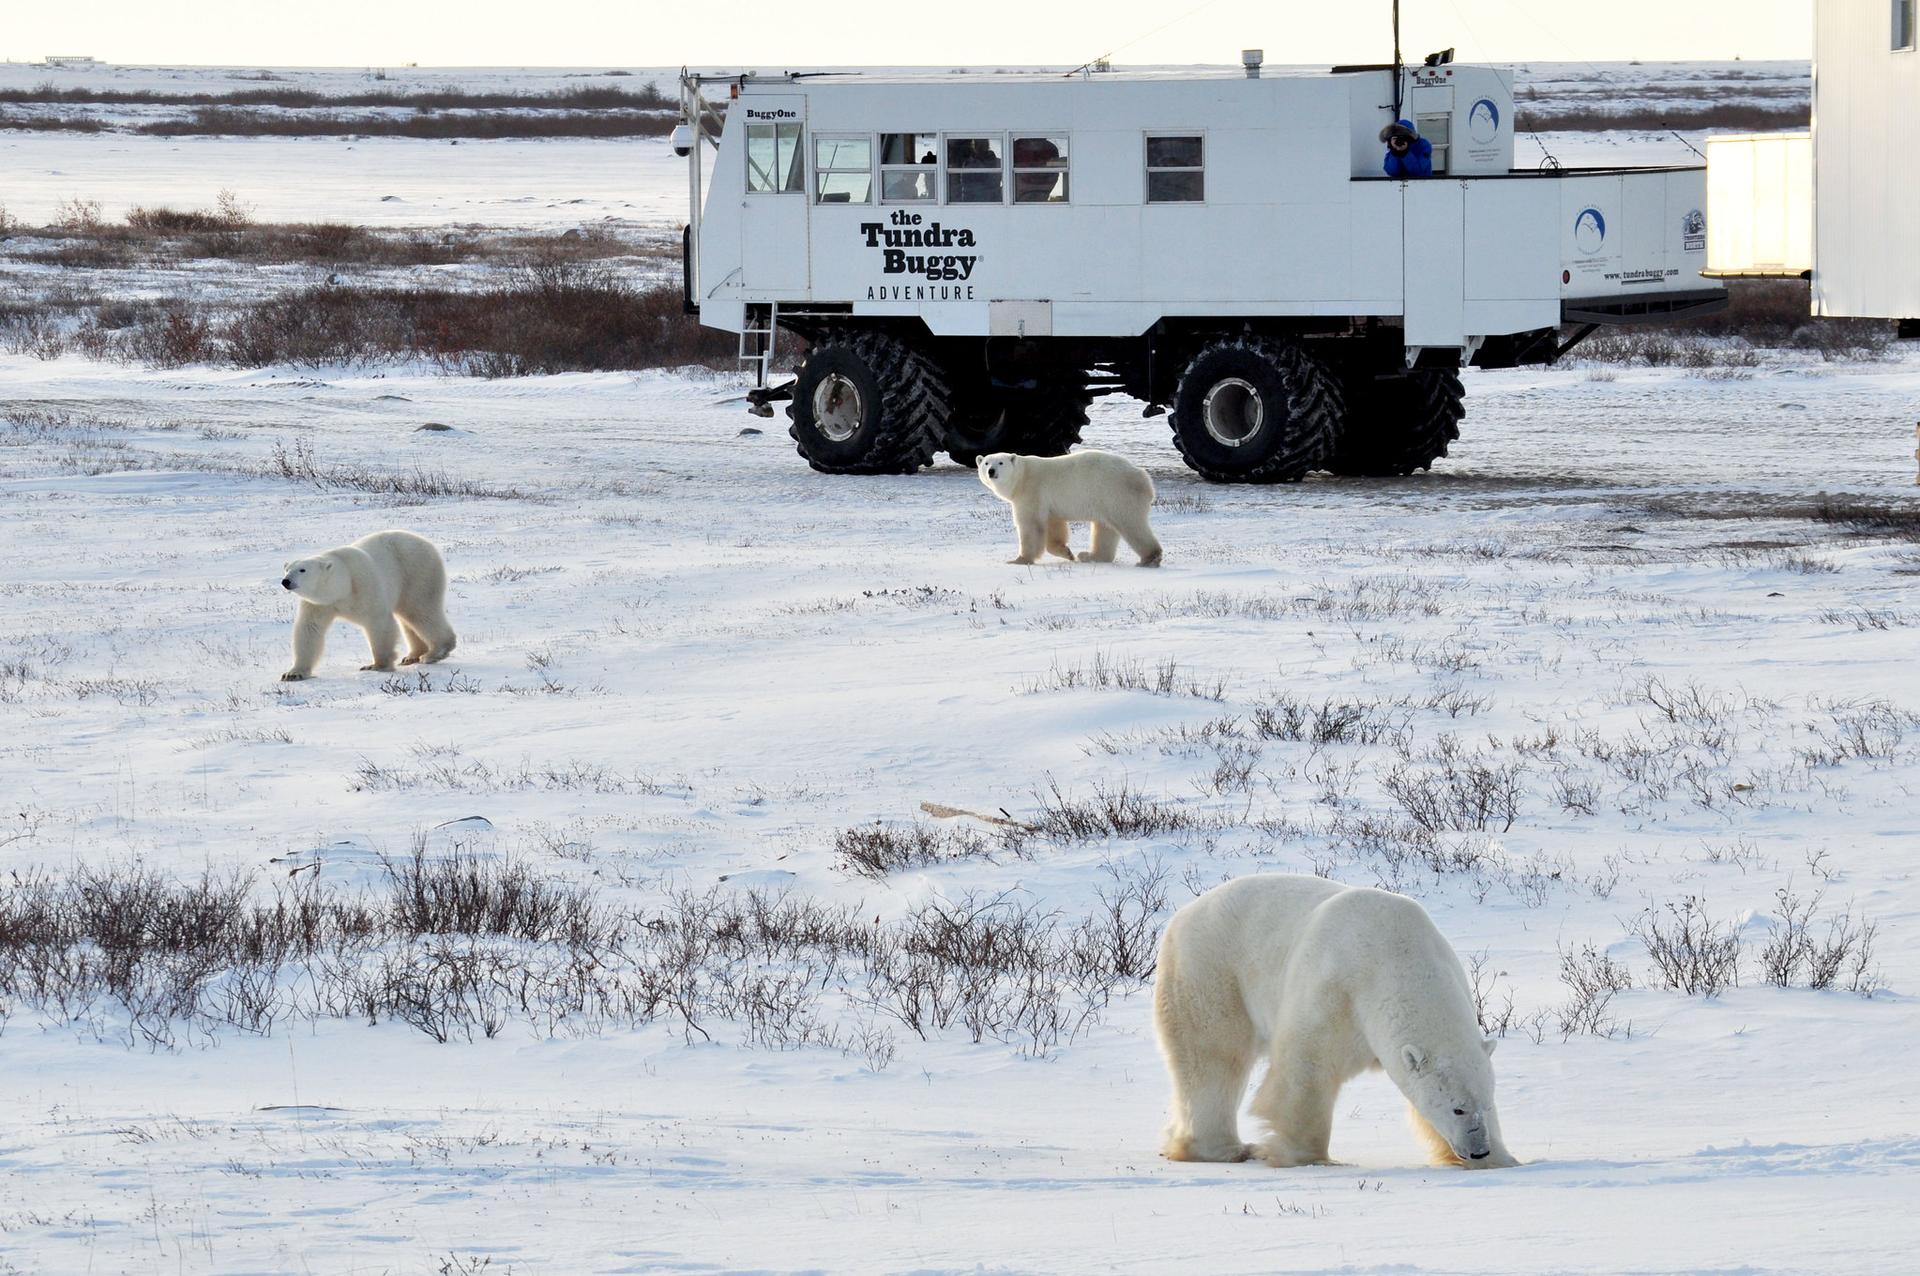 Polar bears in Churuchill, Manitoba